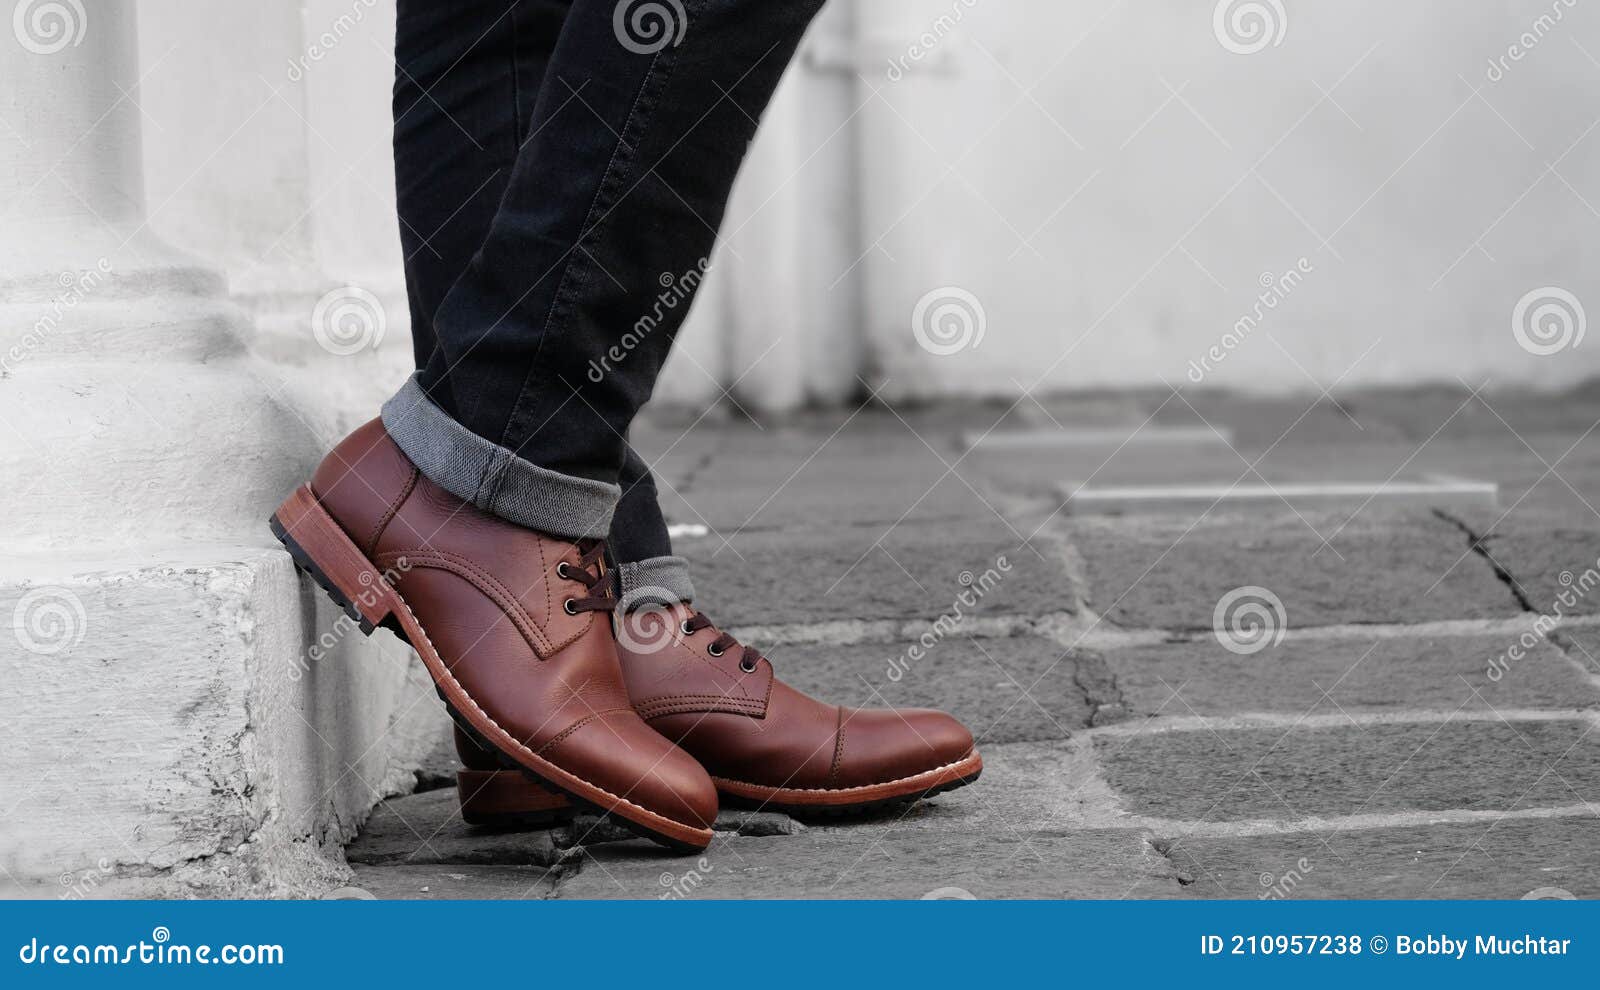 footwear in monochrome